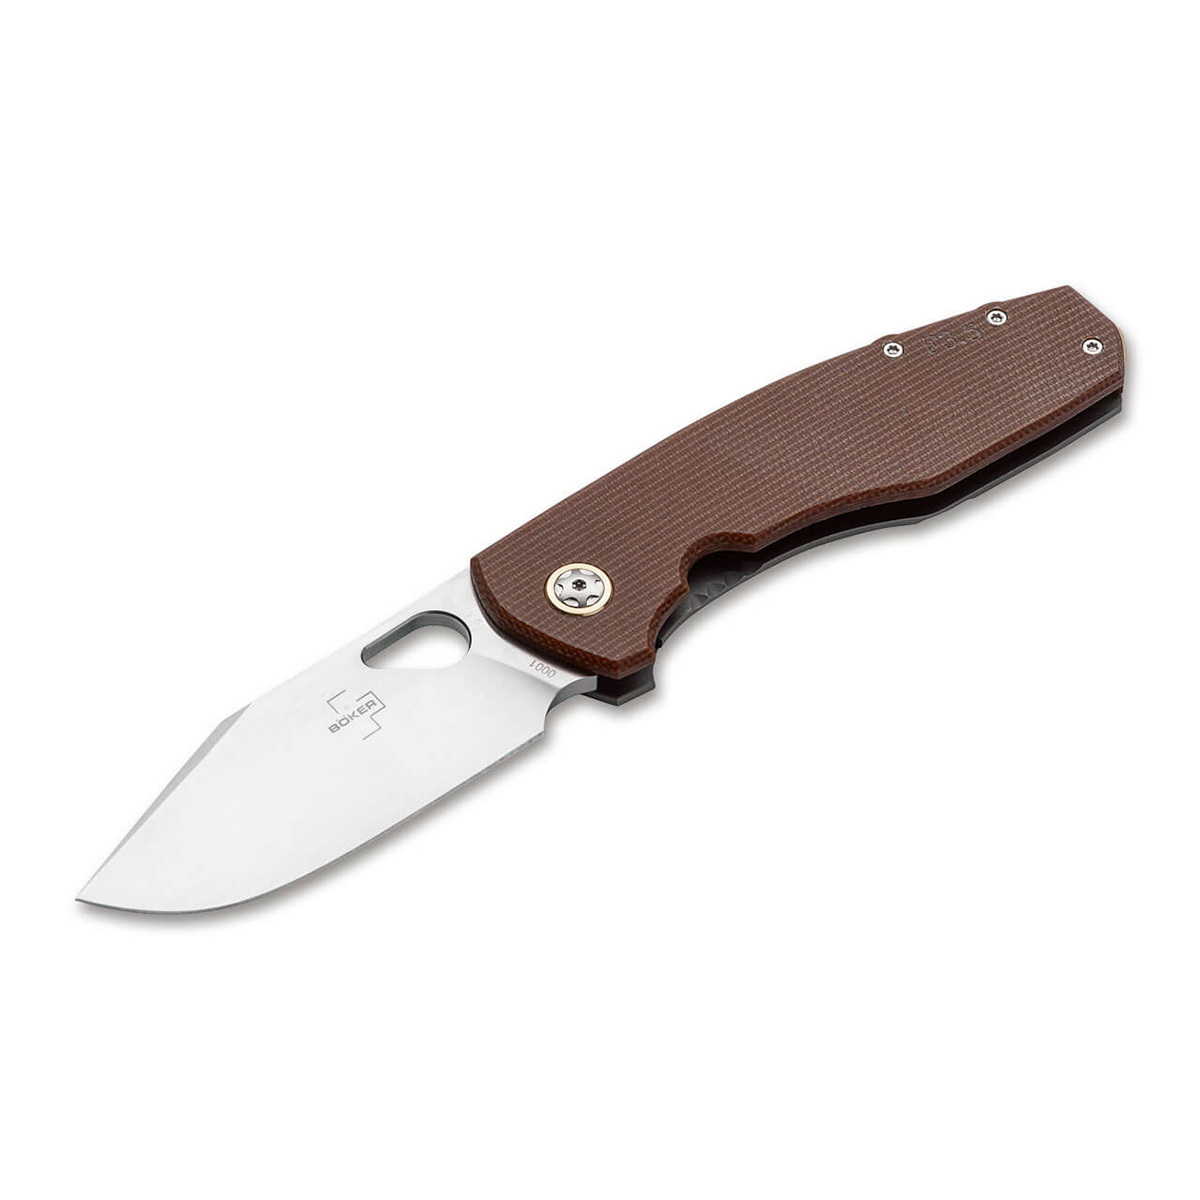 Нож складной Boker Vox F3.5 Micarta, сталь D2, рукоять микарта складной нож artisan sirius сталь s35vn рукоять drc micarta